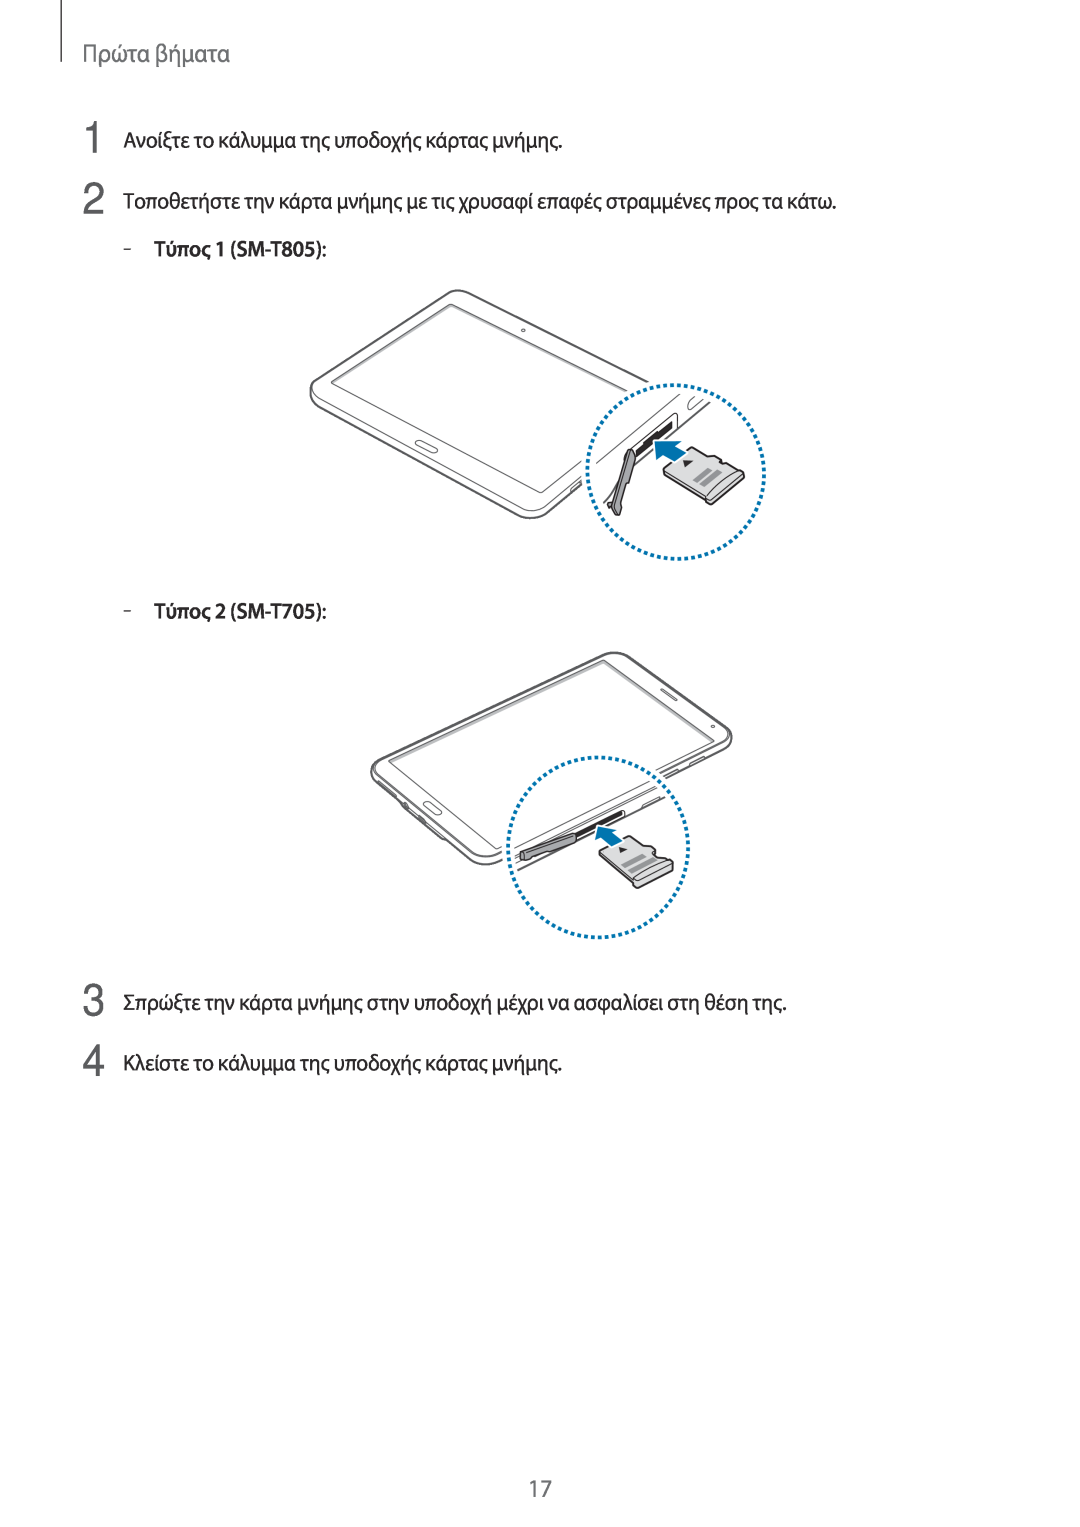 Samsung SM-T705NZWAEUR manual Πρώτα βήματα, Ανοίξτε το κάλυμμα της υποδοχής κάρτας μνήμης, Τύπος 1 SM-T805, Τύπος 2 SM-T705 